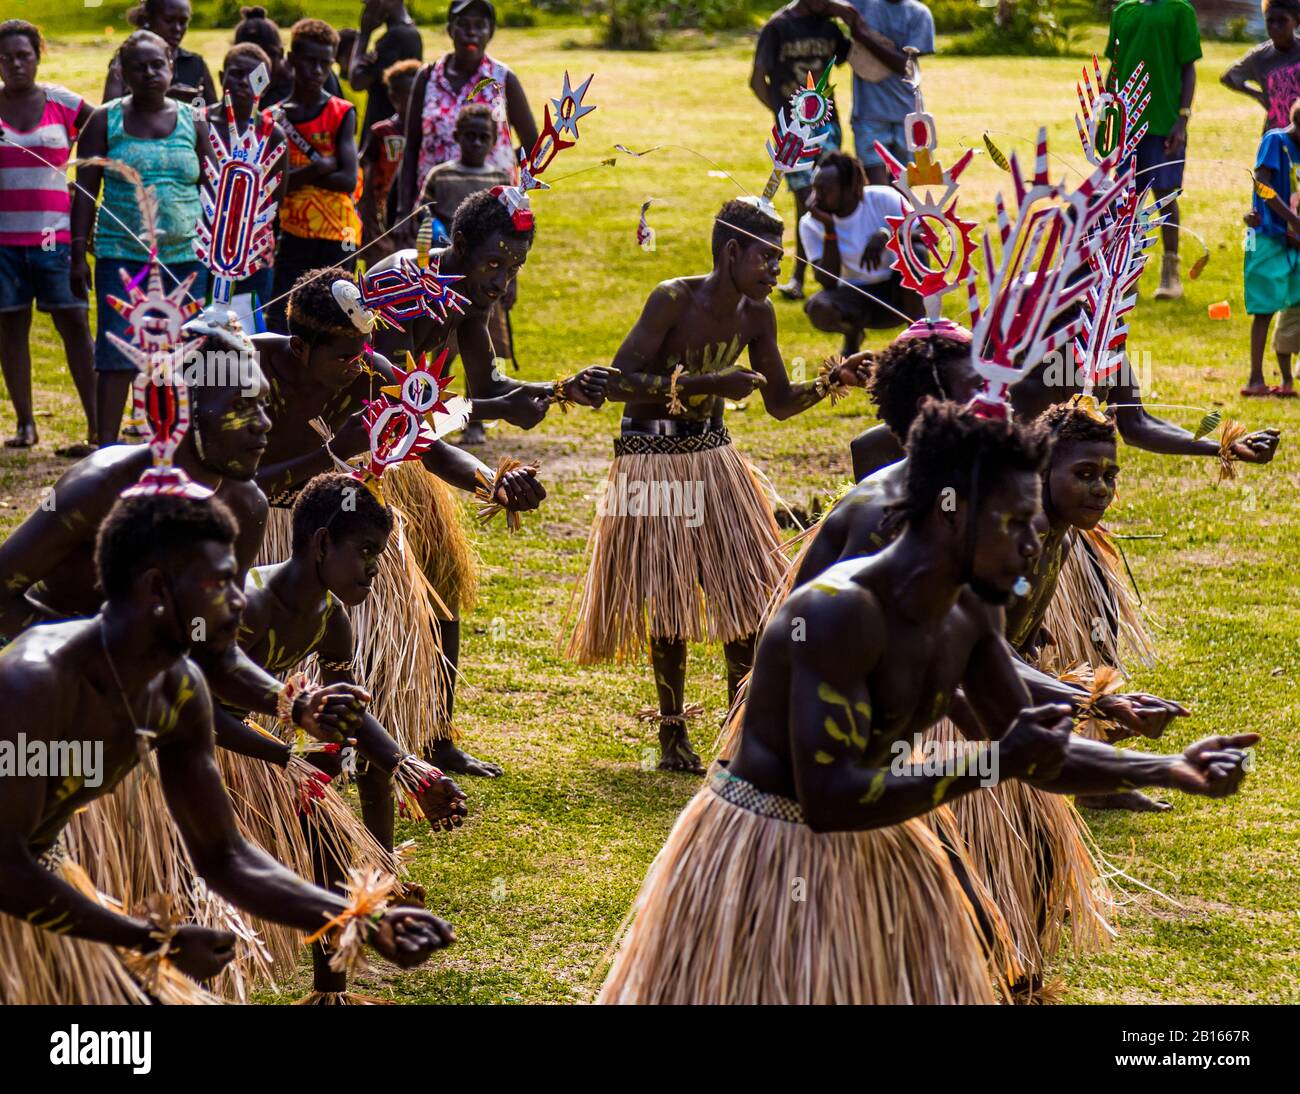 Cantare-cantare a Bougainville, Papua Nuova Guinea. Festival villaggio colorato su Bougainville con musica e danza. I giovani maschi di Bougainville indossano gli upei in testa quando sono ammessi nel circolo degli adulti. Questo cappello rituale è una parte centrale della bandiera nazionale Foto Stock